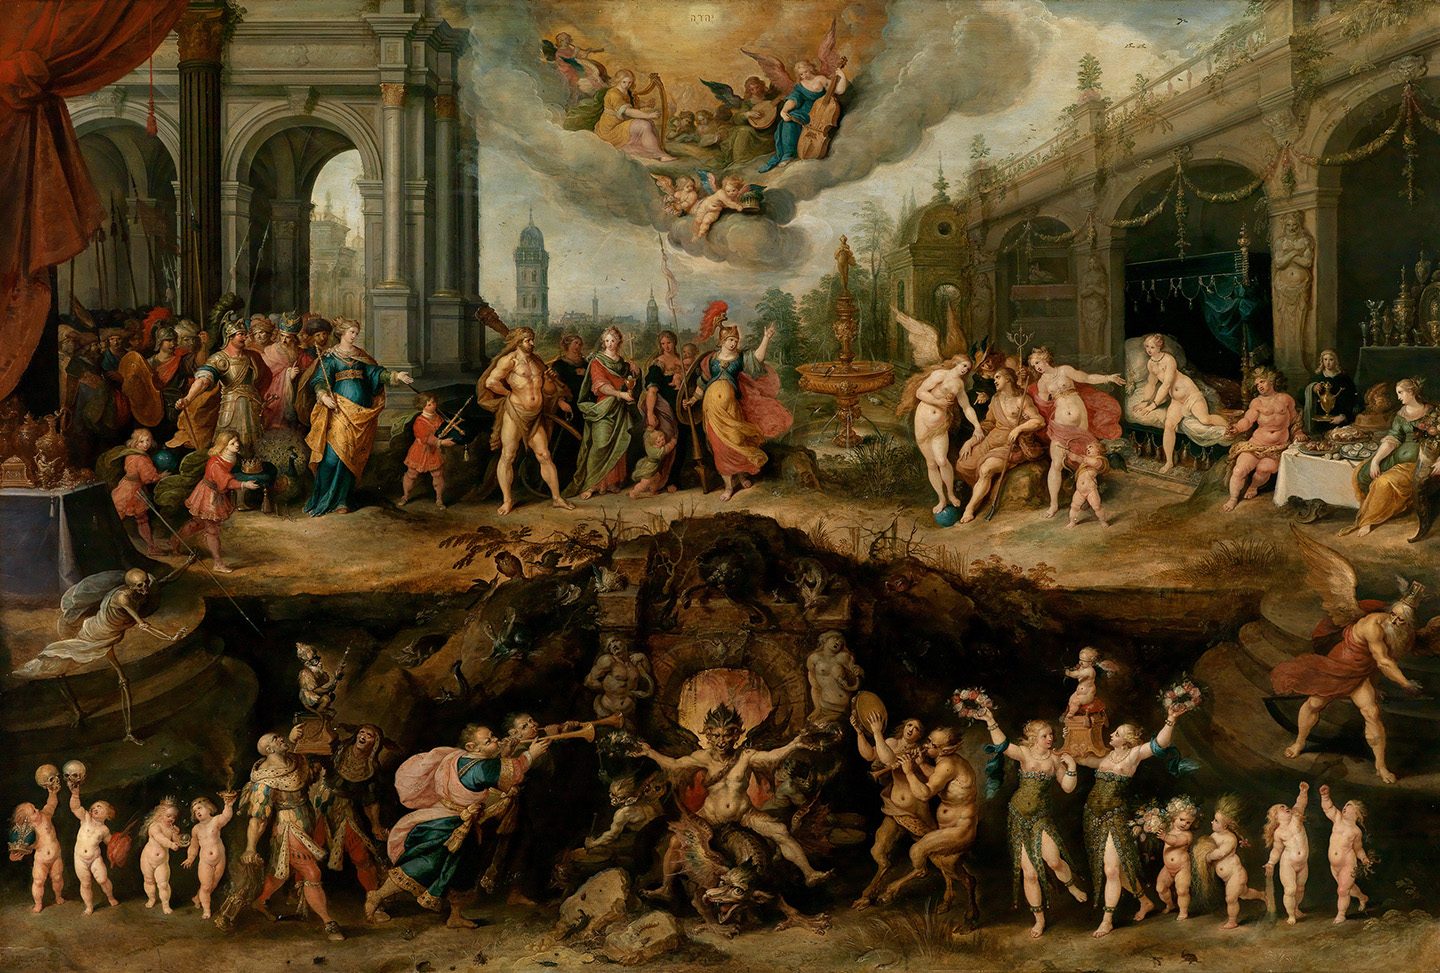 Tác phẩm “Mankind’s Eternal Dilemma—The Choice Between Virtue And Vice” (Thế tiến thoái lưỡng nan muôn thuở của nhân loại — Sự lựa chọn giữa đức hạnh và tội lỗi) của họa sĩ Frans Francken con, vẽ năm 1633. Tranh sơn dầu trên bảng vẽ. Bảo tàng Mỹ thuật Boston. (Ảnh: Tài liệu công cộng)